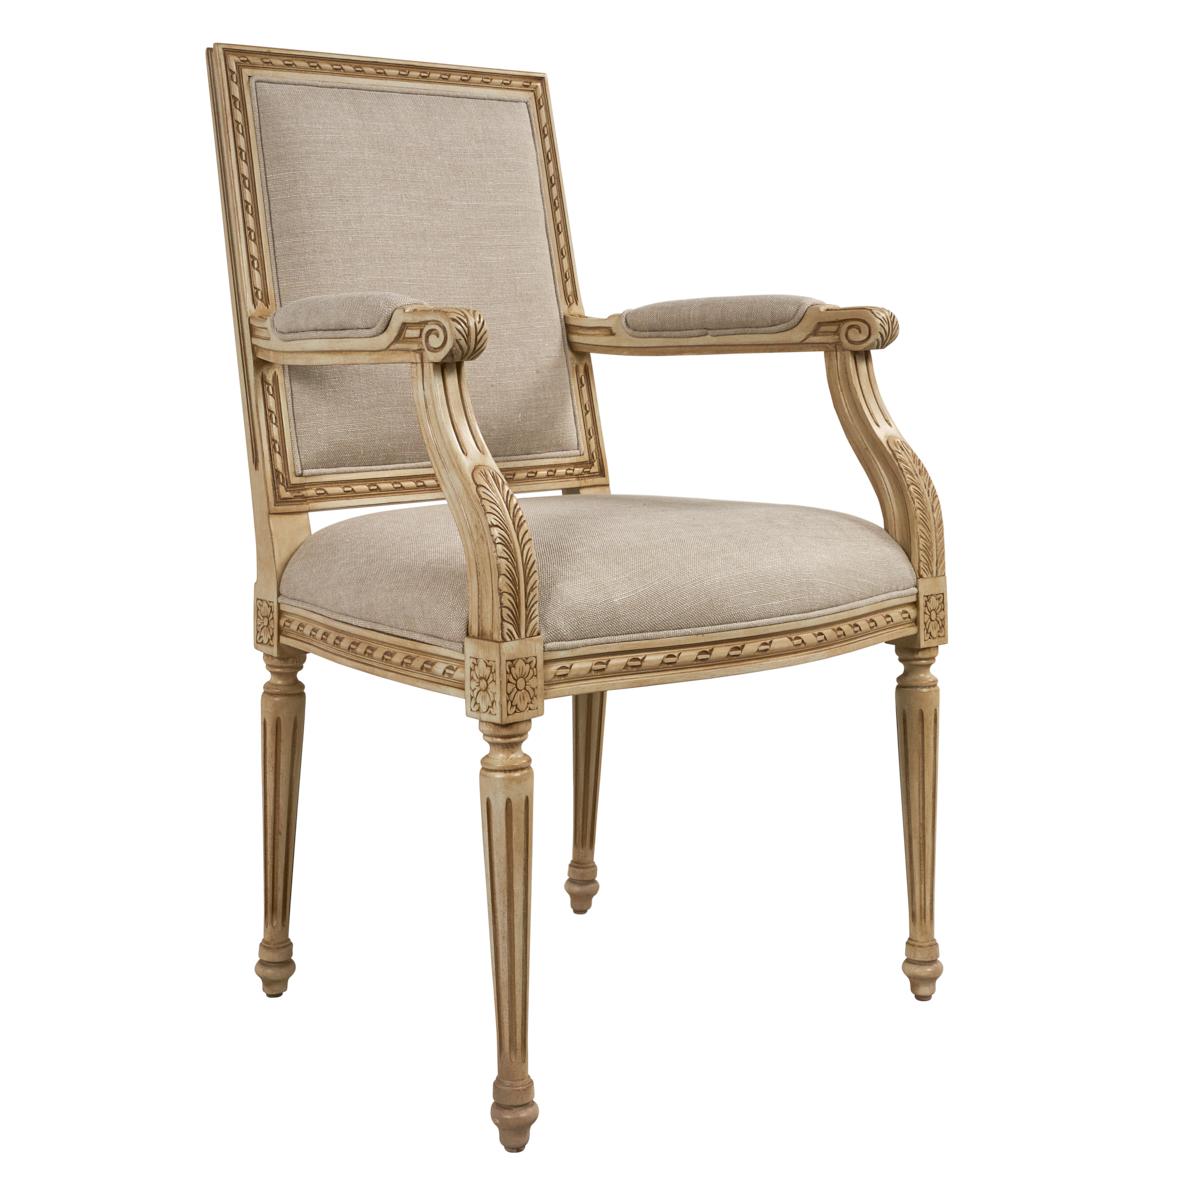 Der Louis XVI-Stuhl hat eine klassische, zeitlose Silhouette mit einem handgeschnitzten Rahmen aus europäischem Buchenholz und kannelierten Beinen.

Seit der Gründung von Schumacher im Jahr 1889 ist unser Familienunternehmen ein Synonym für Stil,